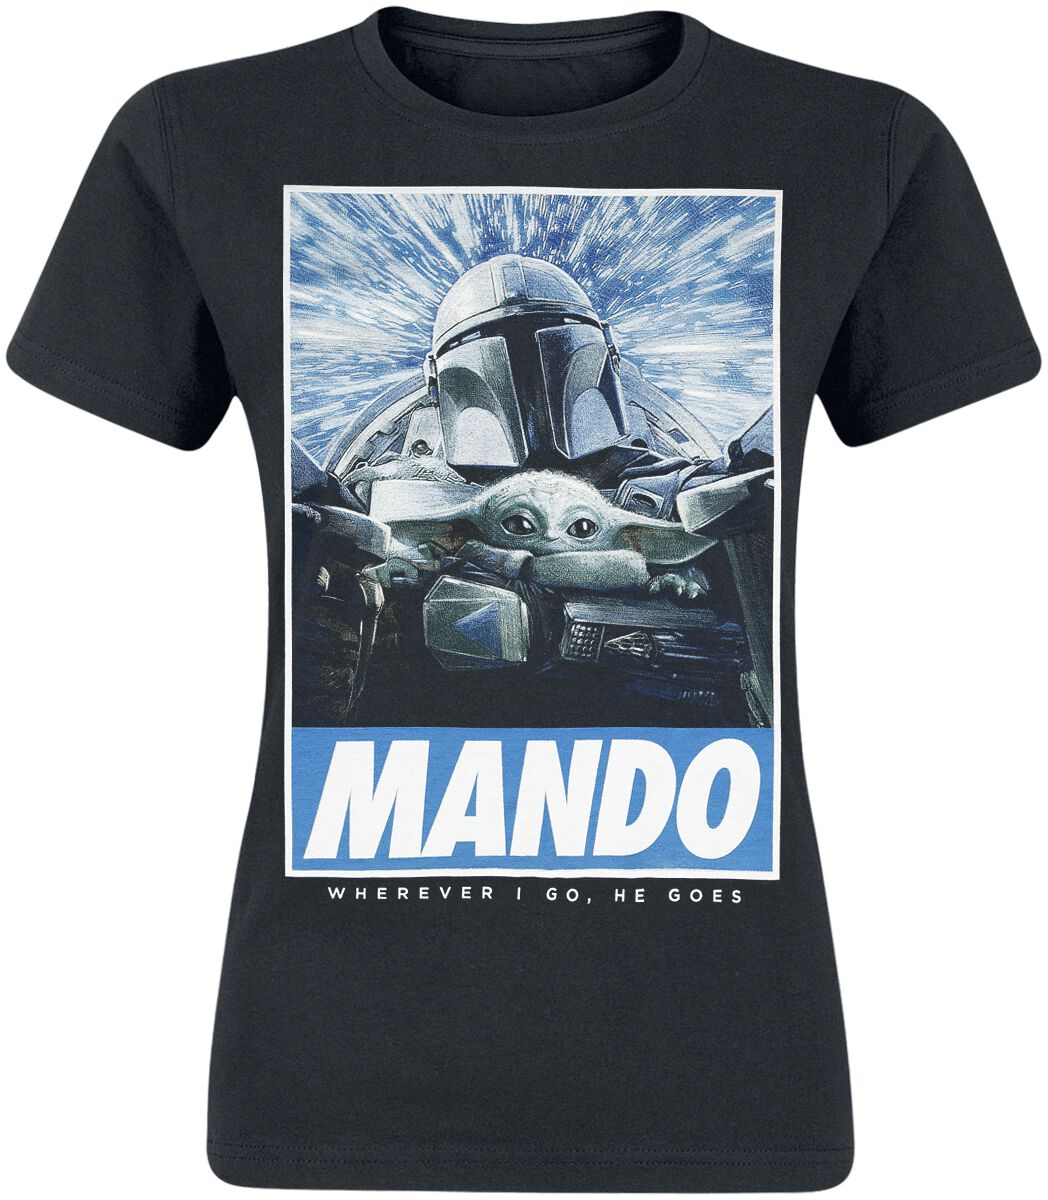 T-Shirt Manches courtes de Star Wars - The Mandalorian - Wherever I Go - S à XL - pour Femme - noir